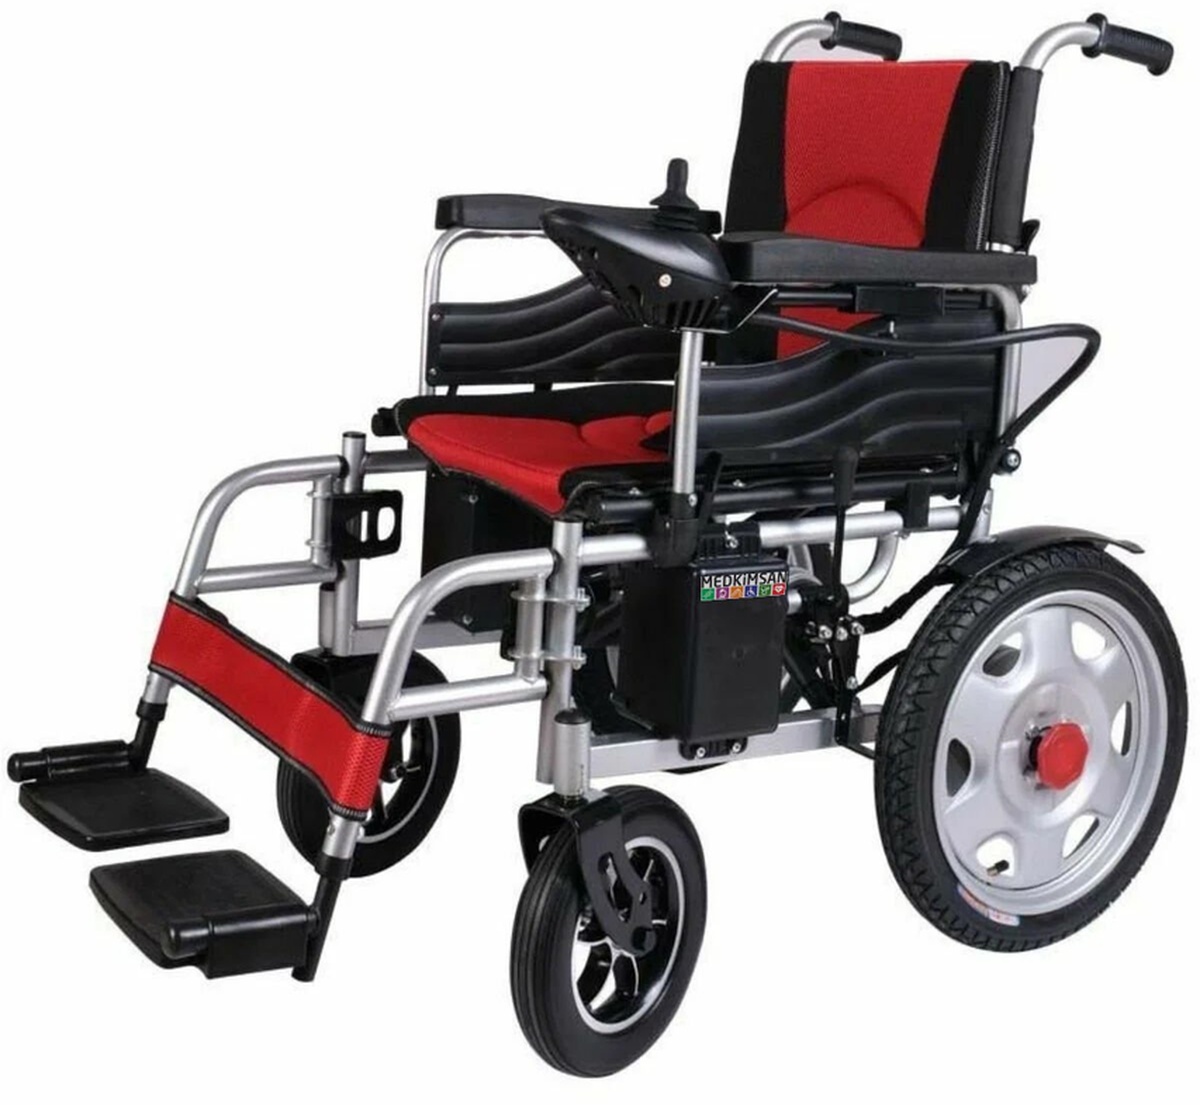 Medkimsan Tek Hareketle Katlanabilir Akülü Tekerlekli Sandalye